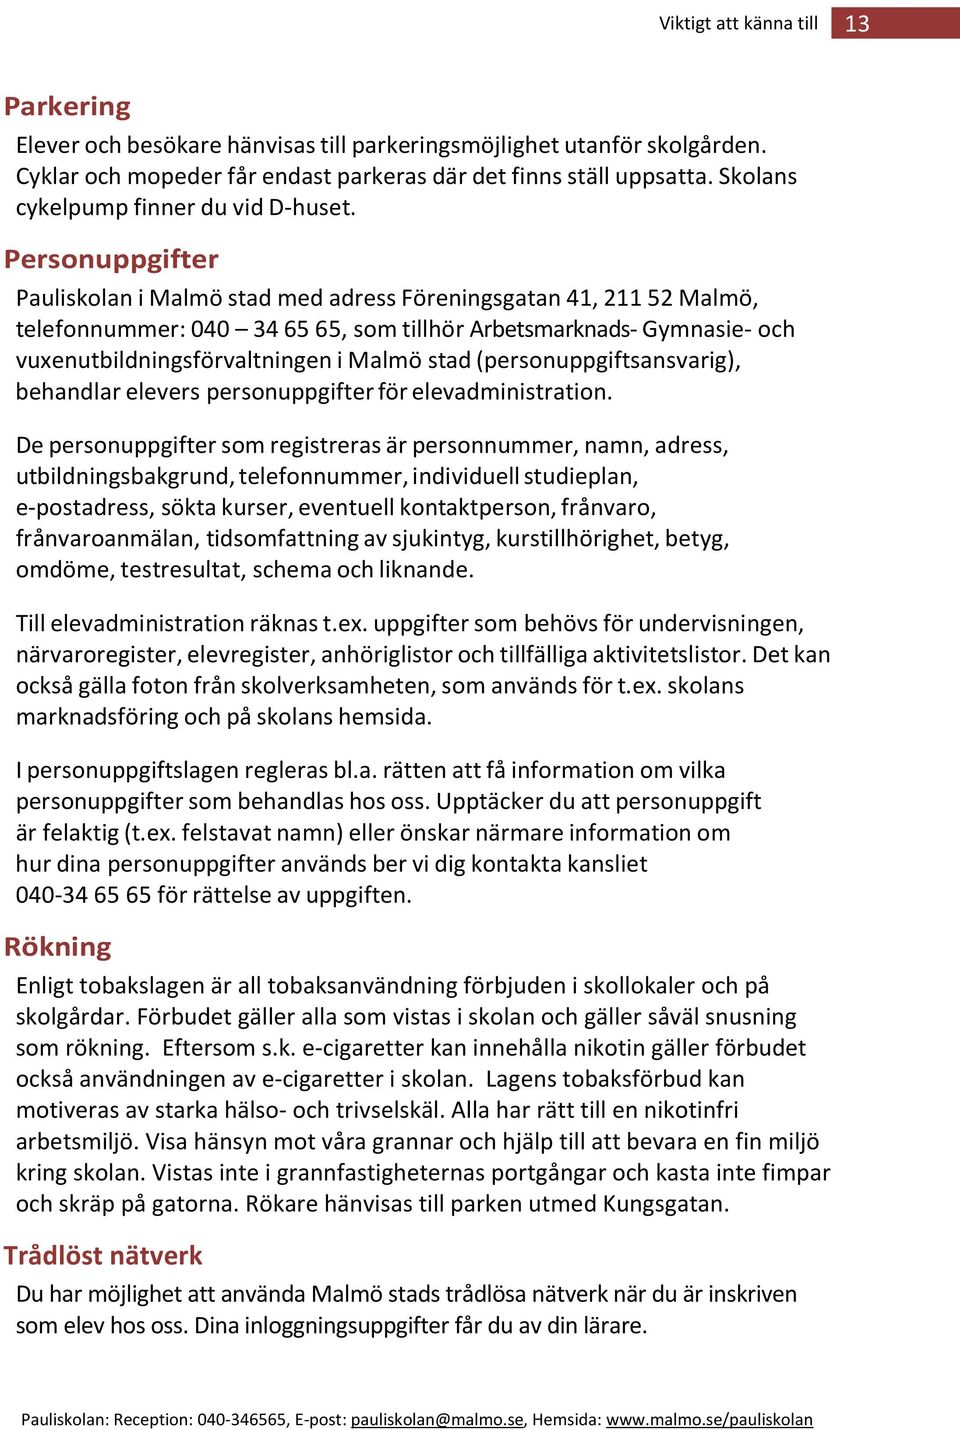 Personuppgifter Pauliskolan i Malmö stad med adress Föreningsgatan 41, 211 52 Malmö, telefonnummer: 040 34 65 65, som tillhör Arbetsmarknads- Gymnasie- och vuxenutbildningsförvaltningen i Malmö stad